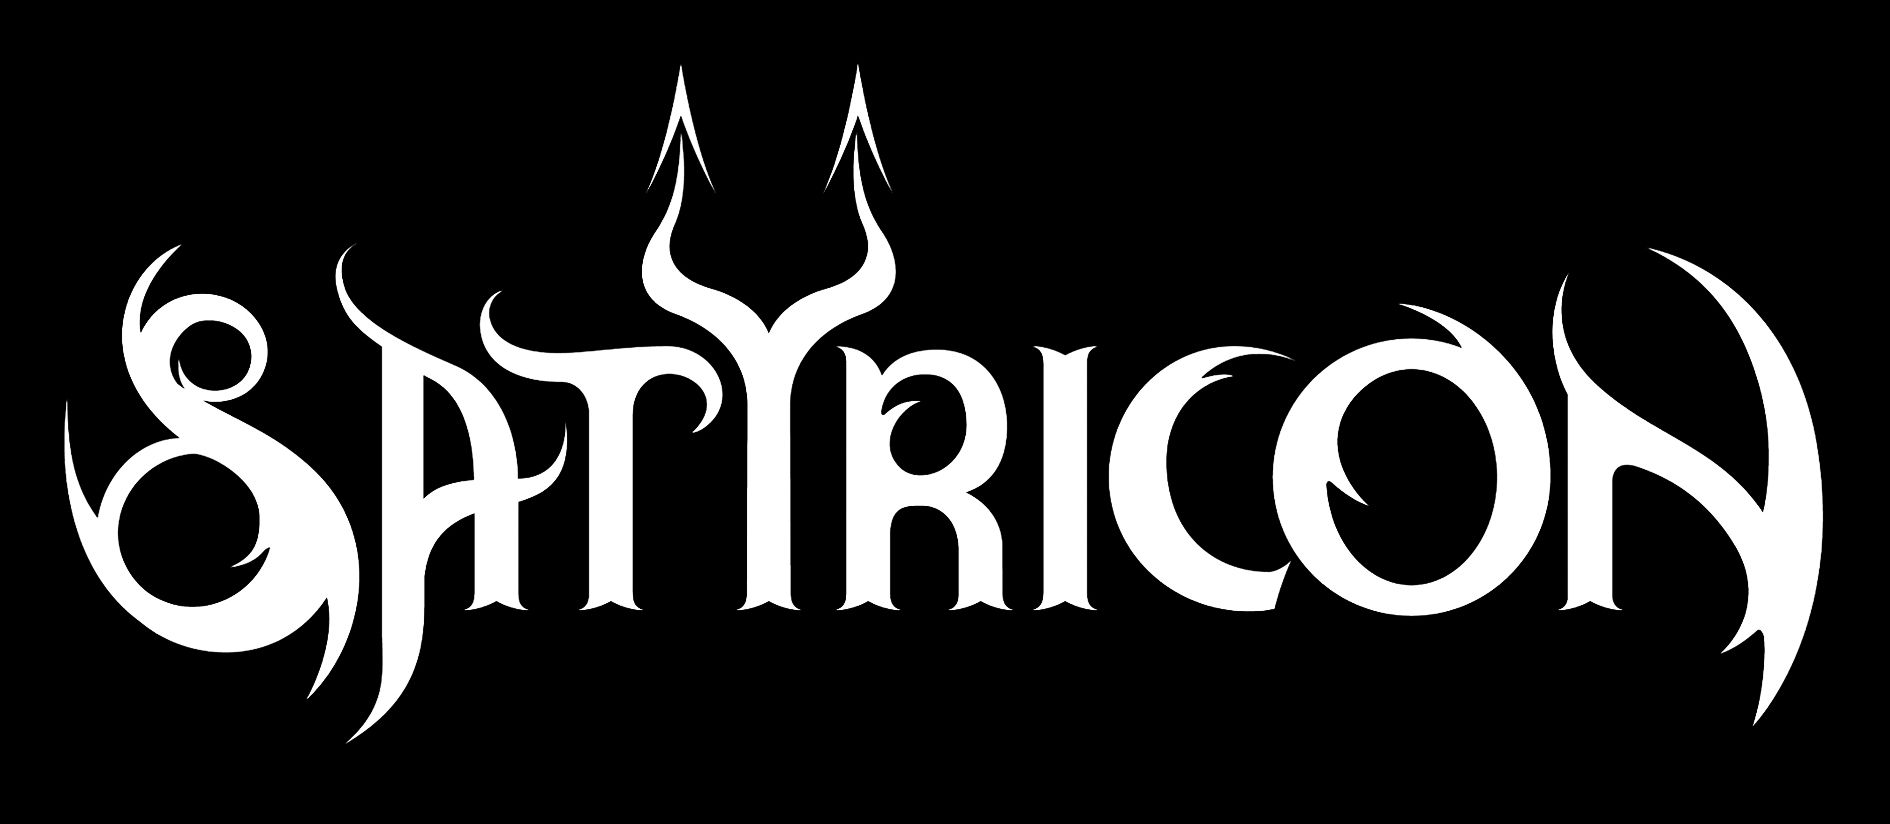 Satyricon - Discography 1993 - 2013 [Black Metal]